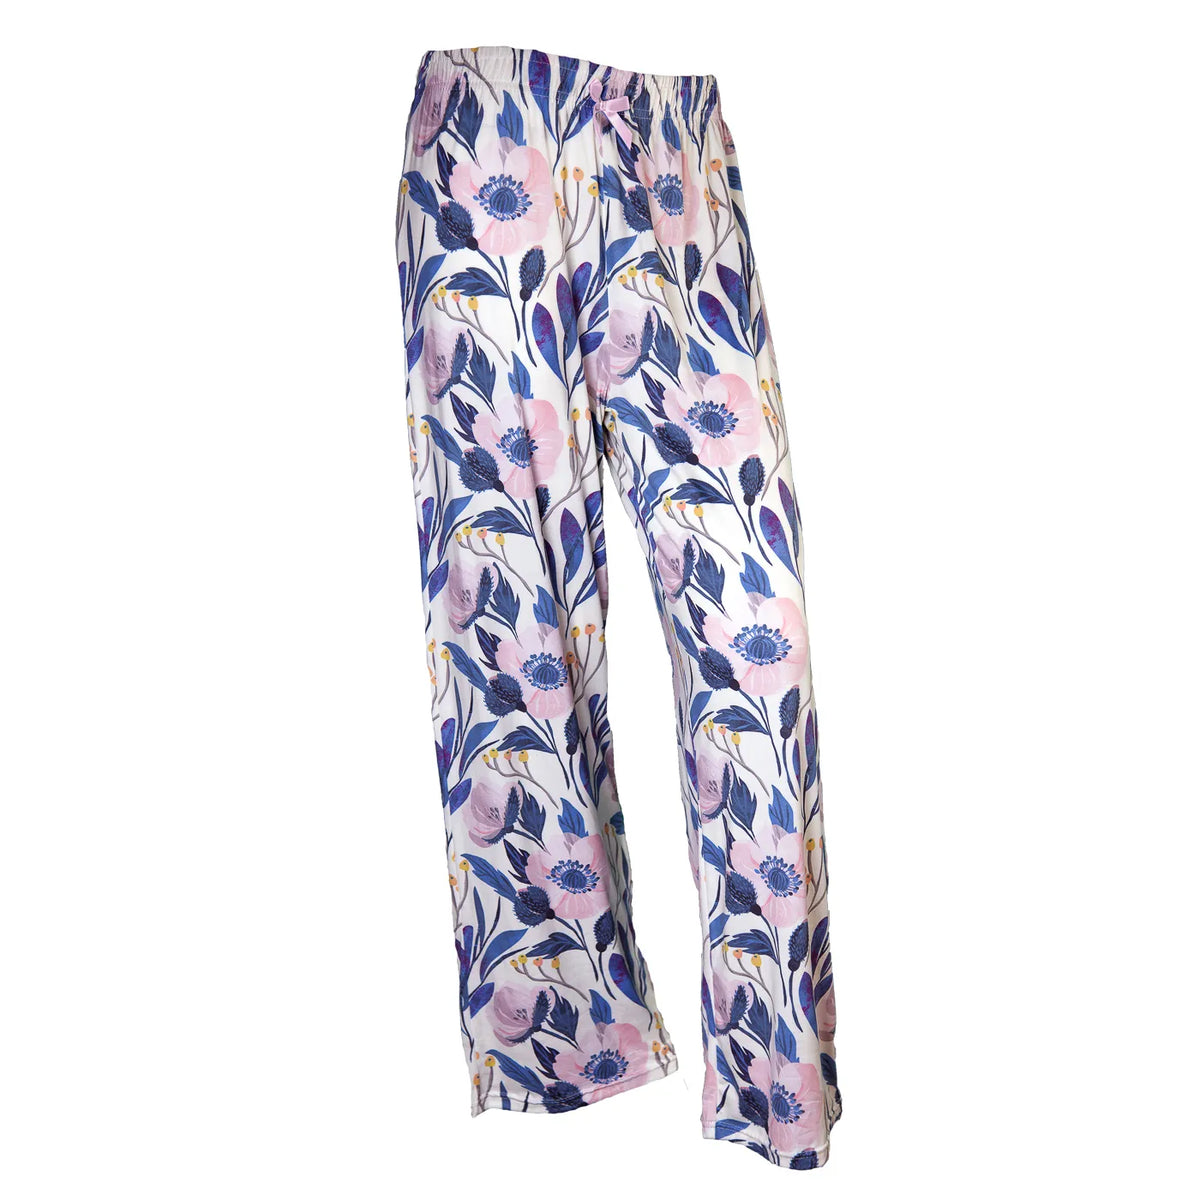 Amanda Blu Pajama Pants - Cool Florals